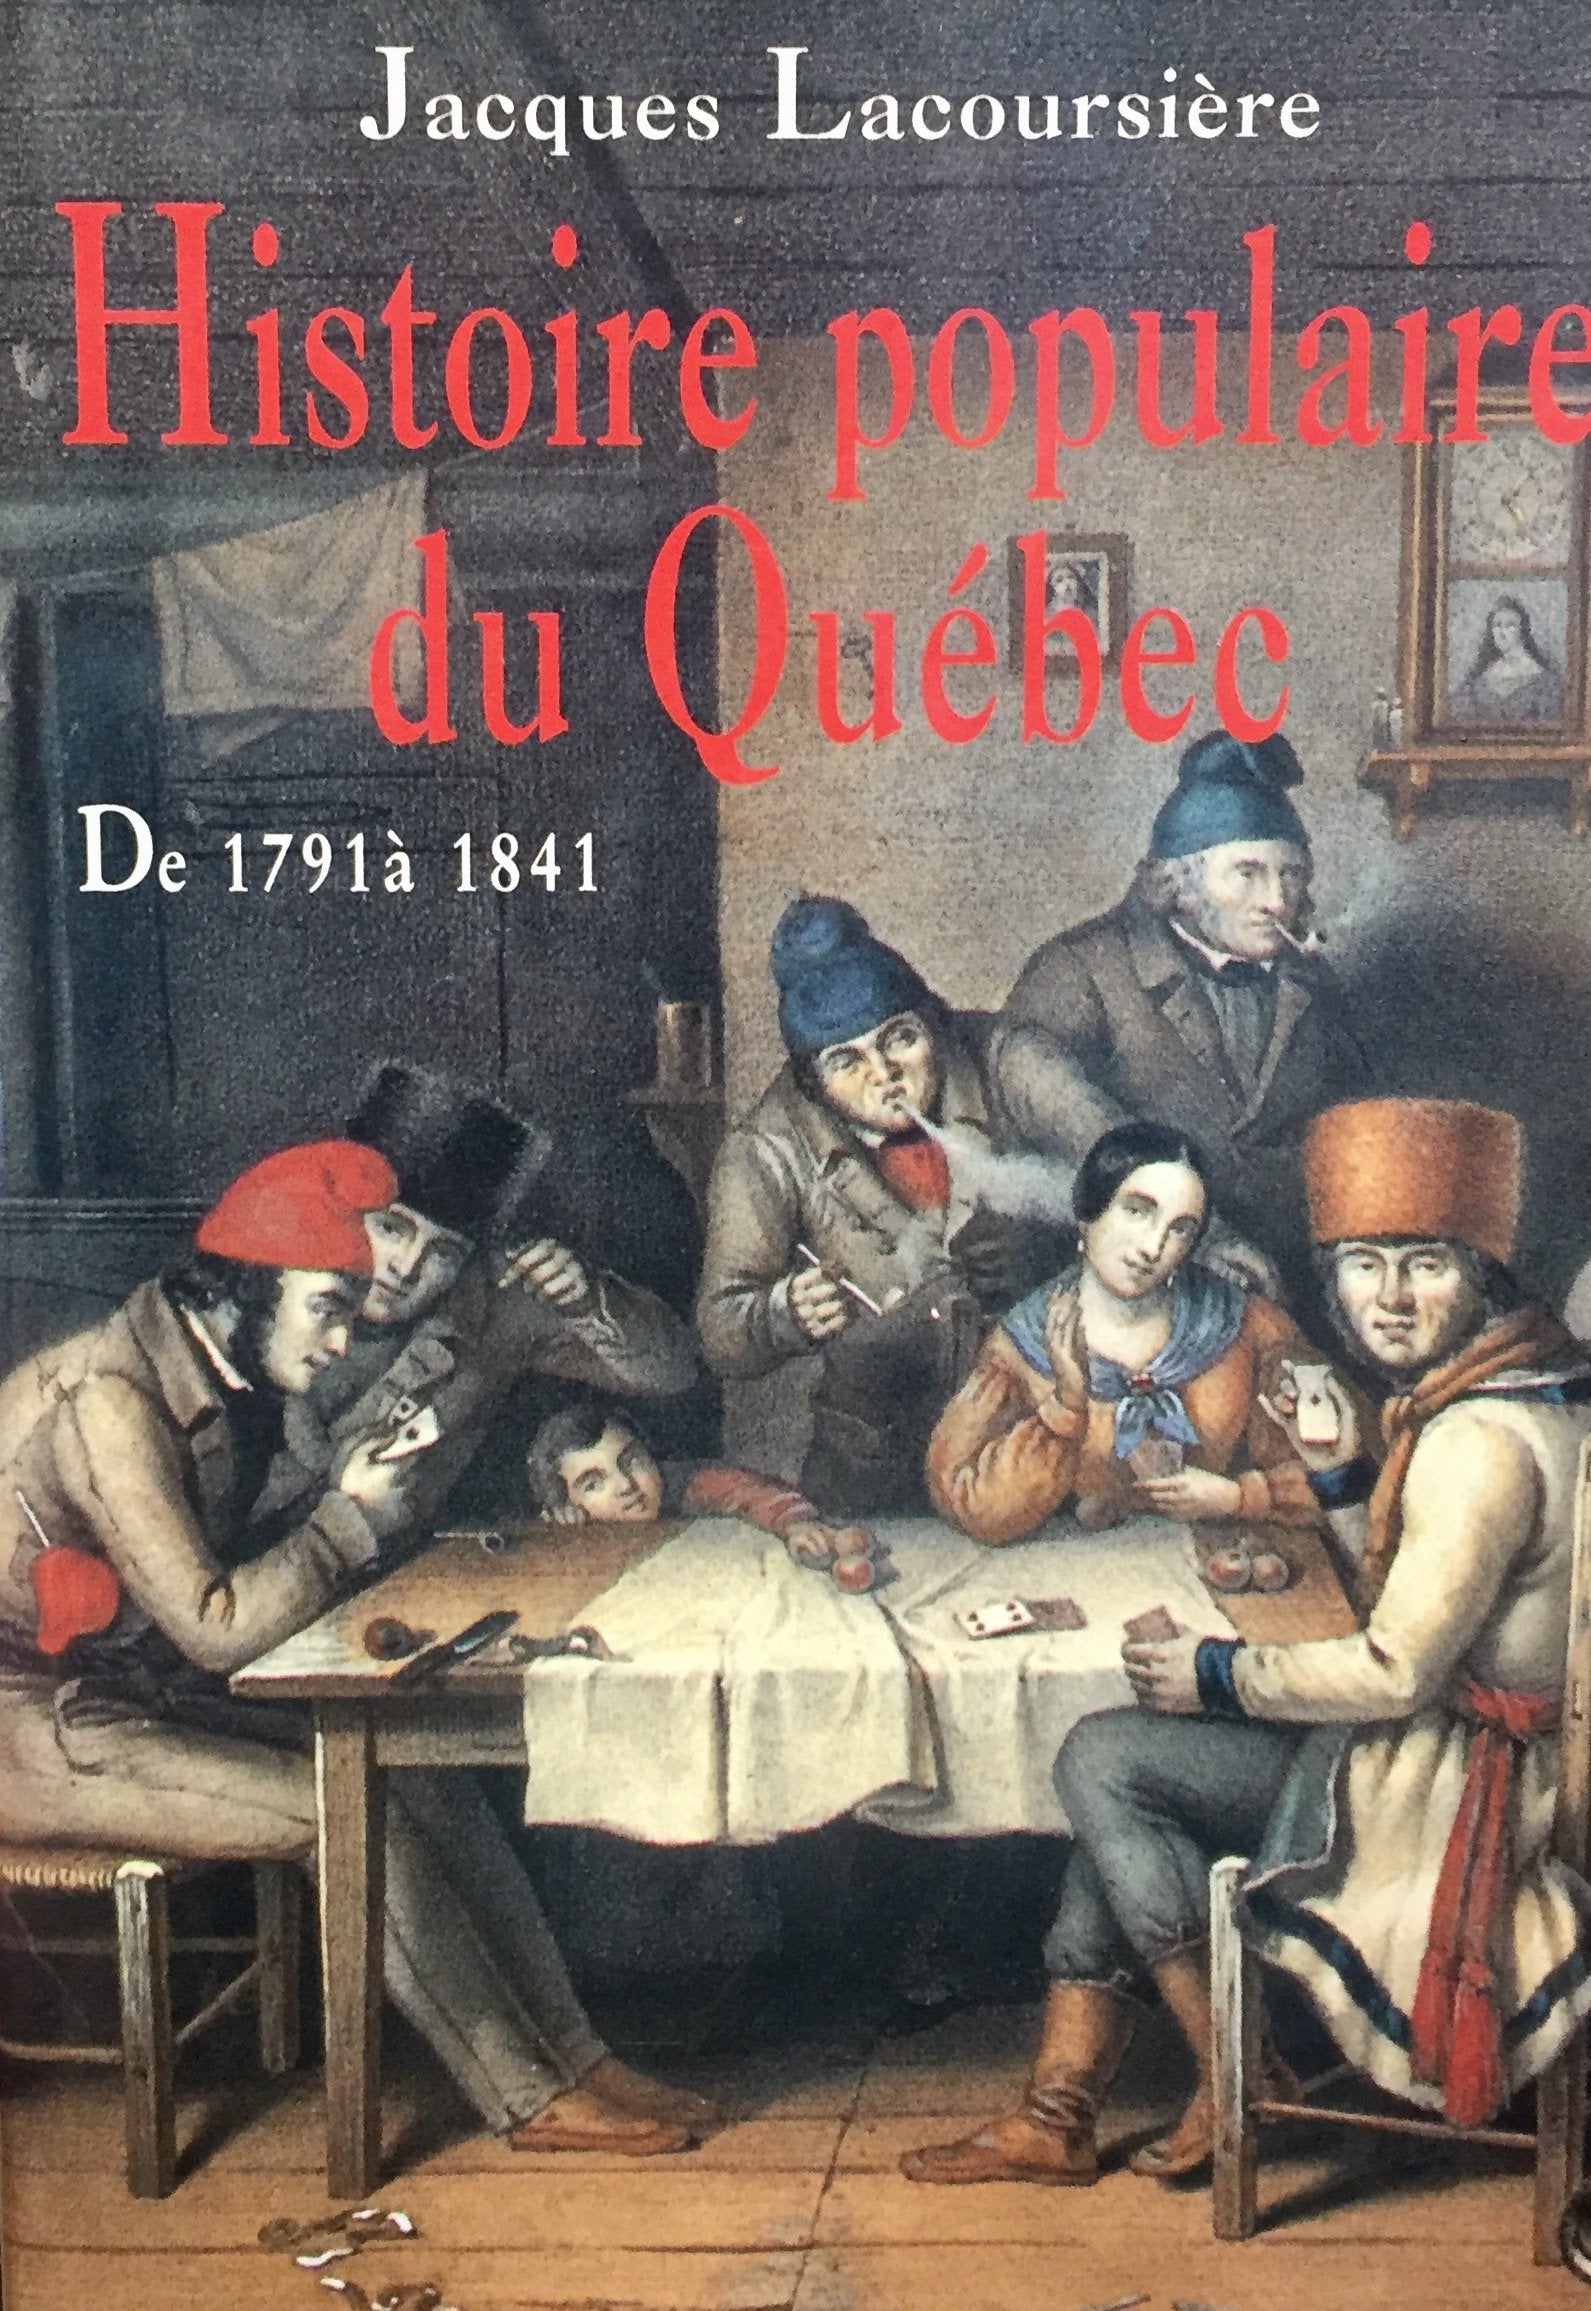 Livre ISBN 2894302509 Histoire populaire du Québec # 2 : De 1791 à 1841 (Jacques Lacoursière)